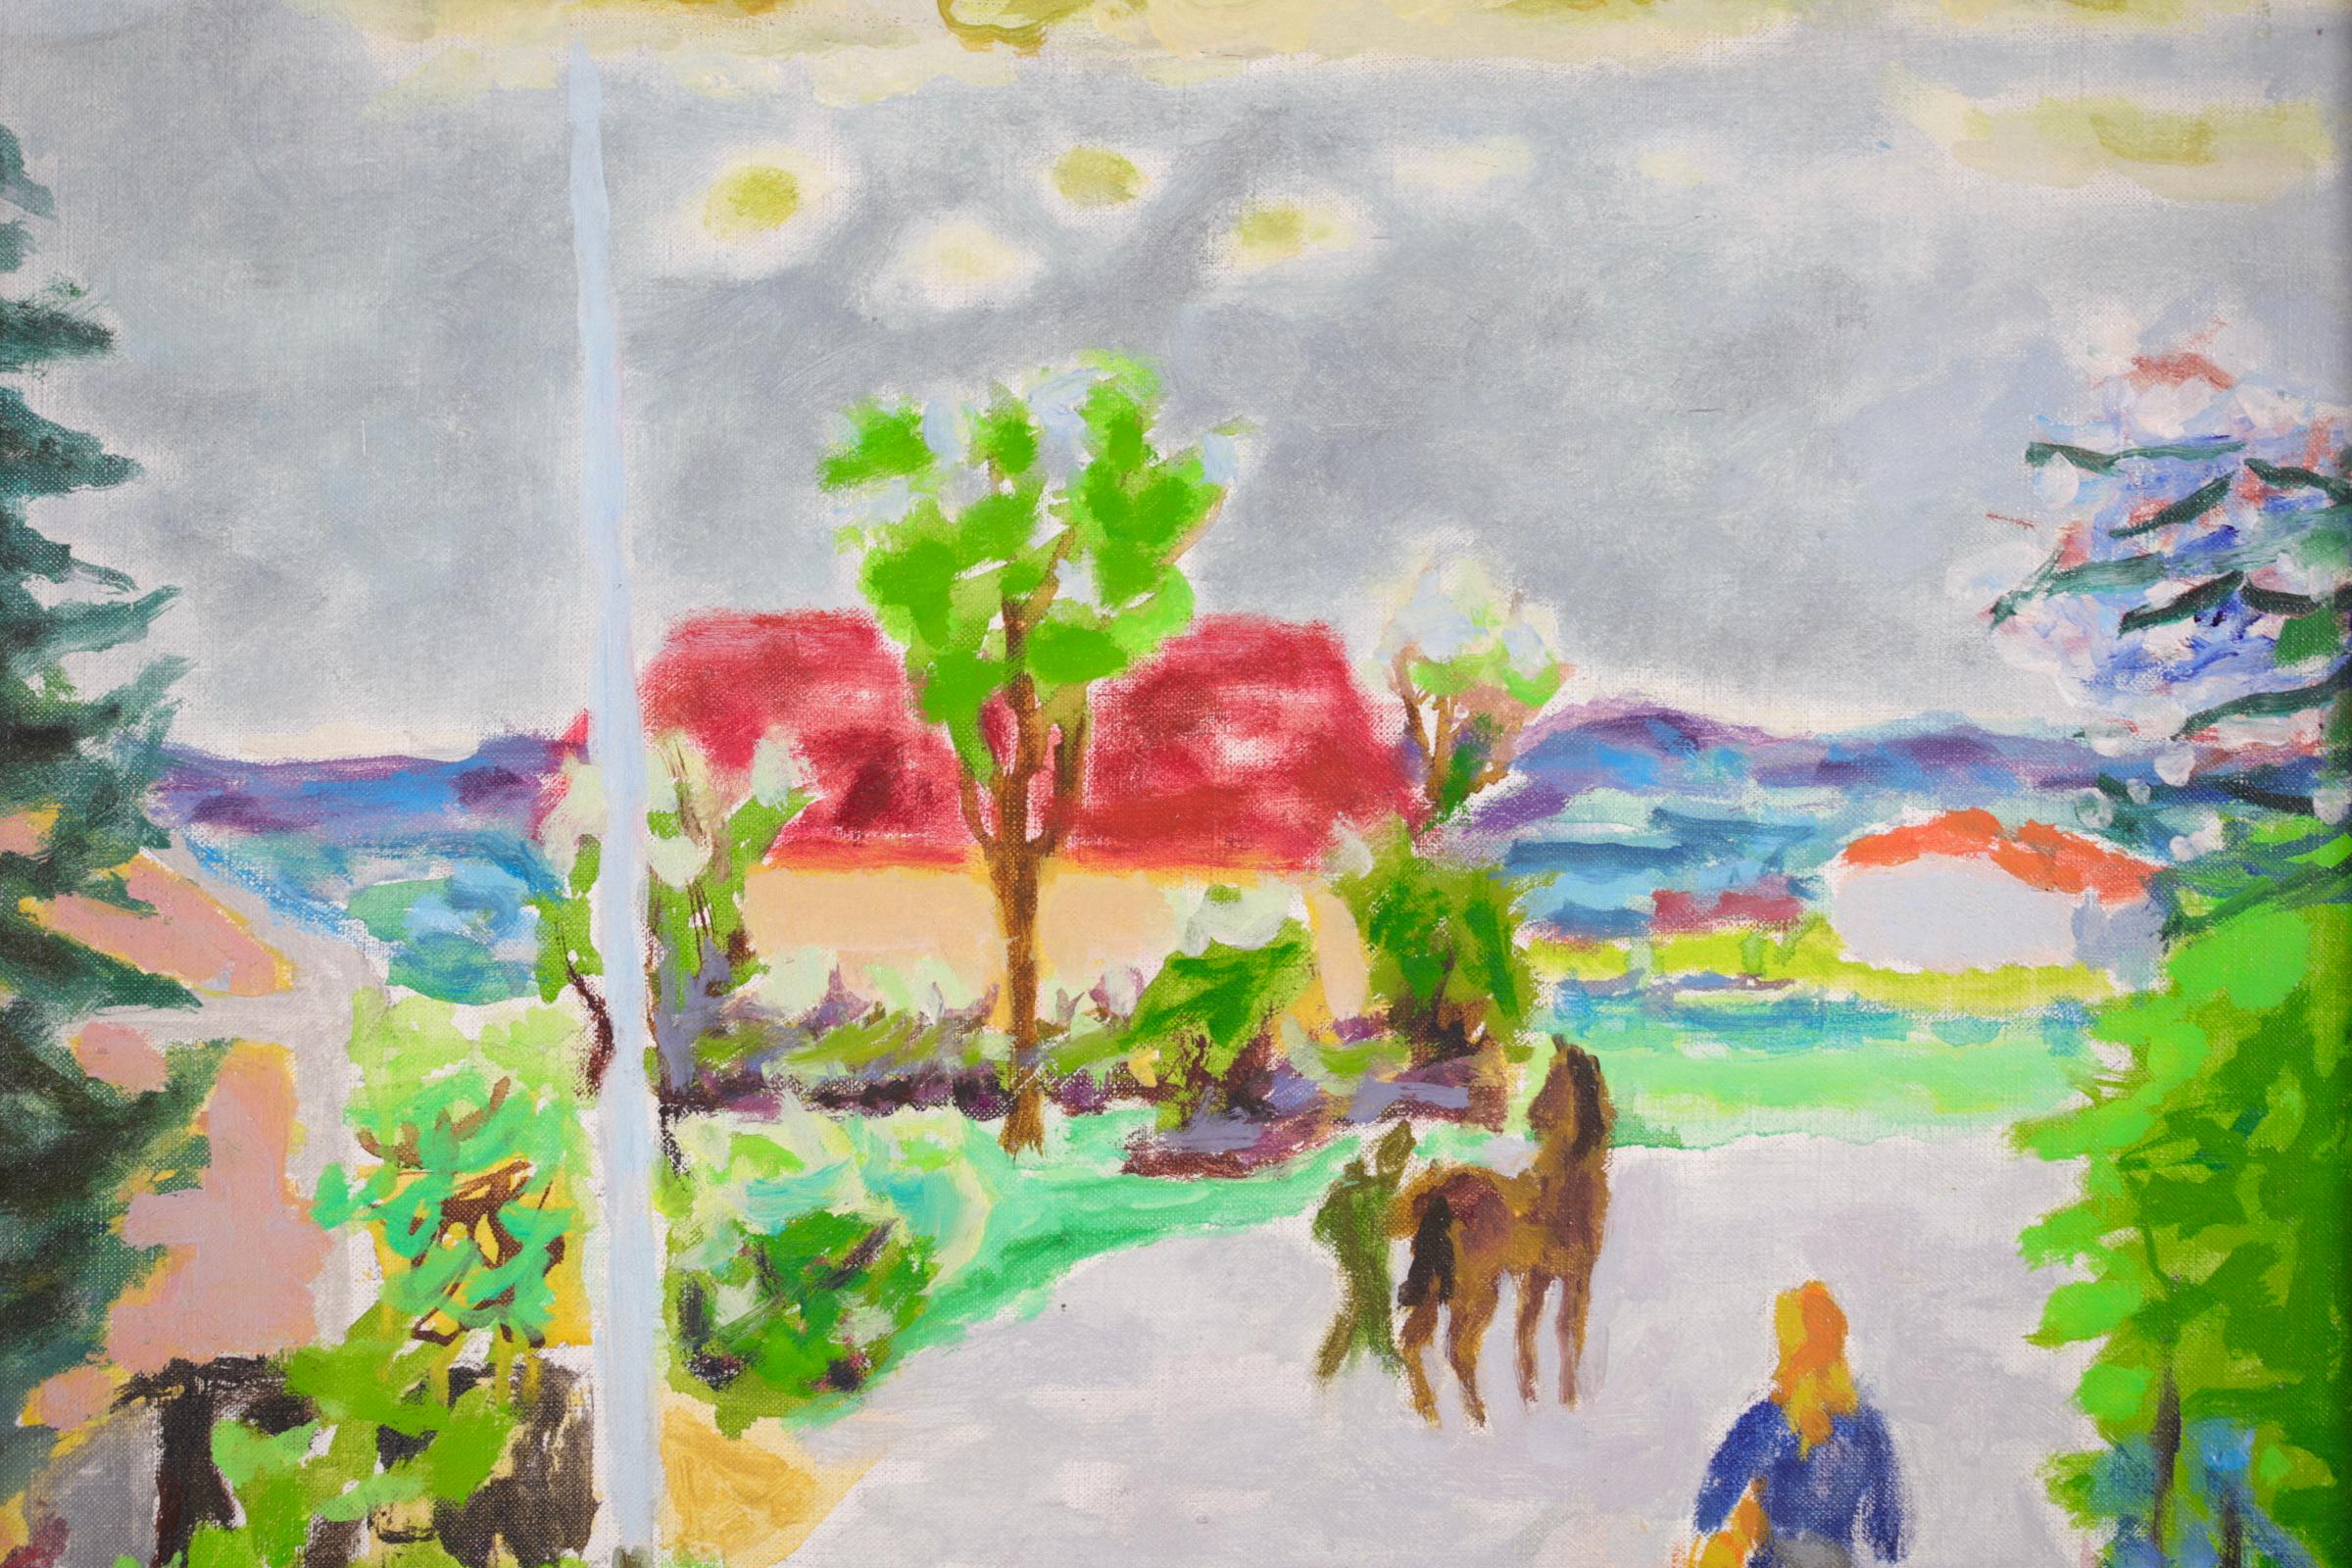 Huile sur toile signée vers 1950 par le peintre français Jules Cavailles qui faisait partie d'un groupe d'artistes appelé « La Realite Poetique ». Cette pièce charmante représente une femme portant un panier et un homme avec un cheval se promenant